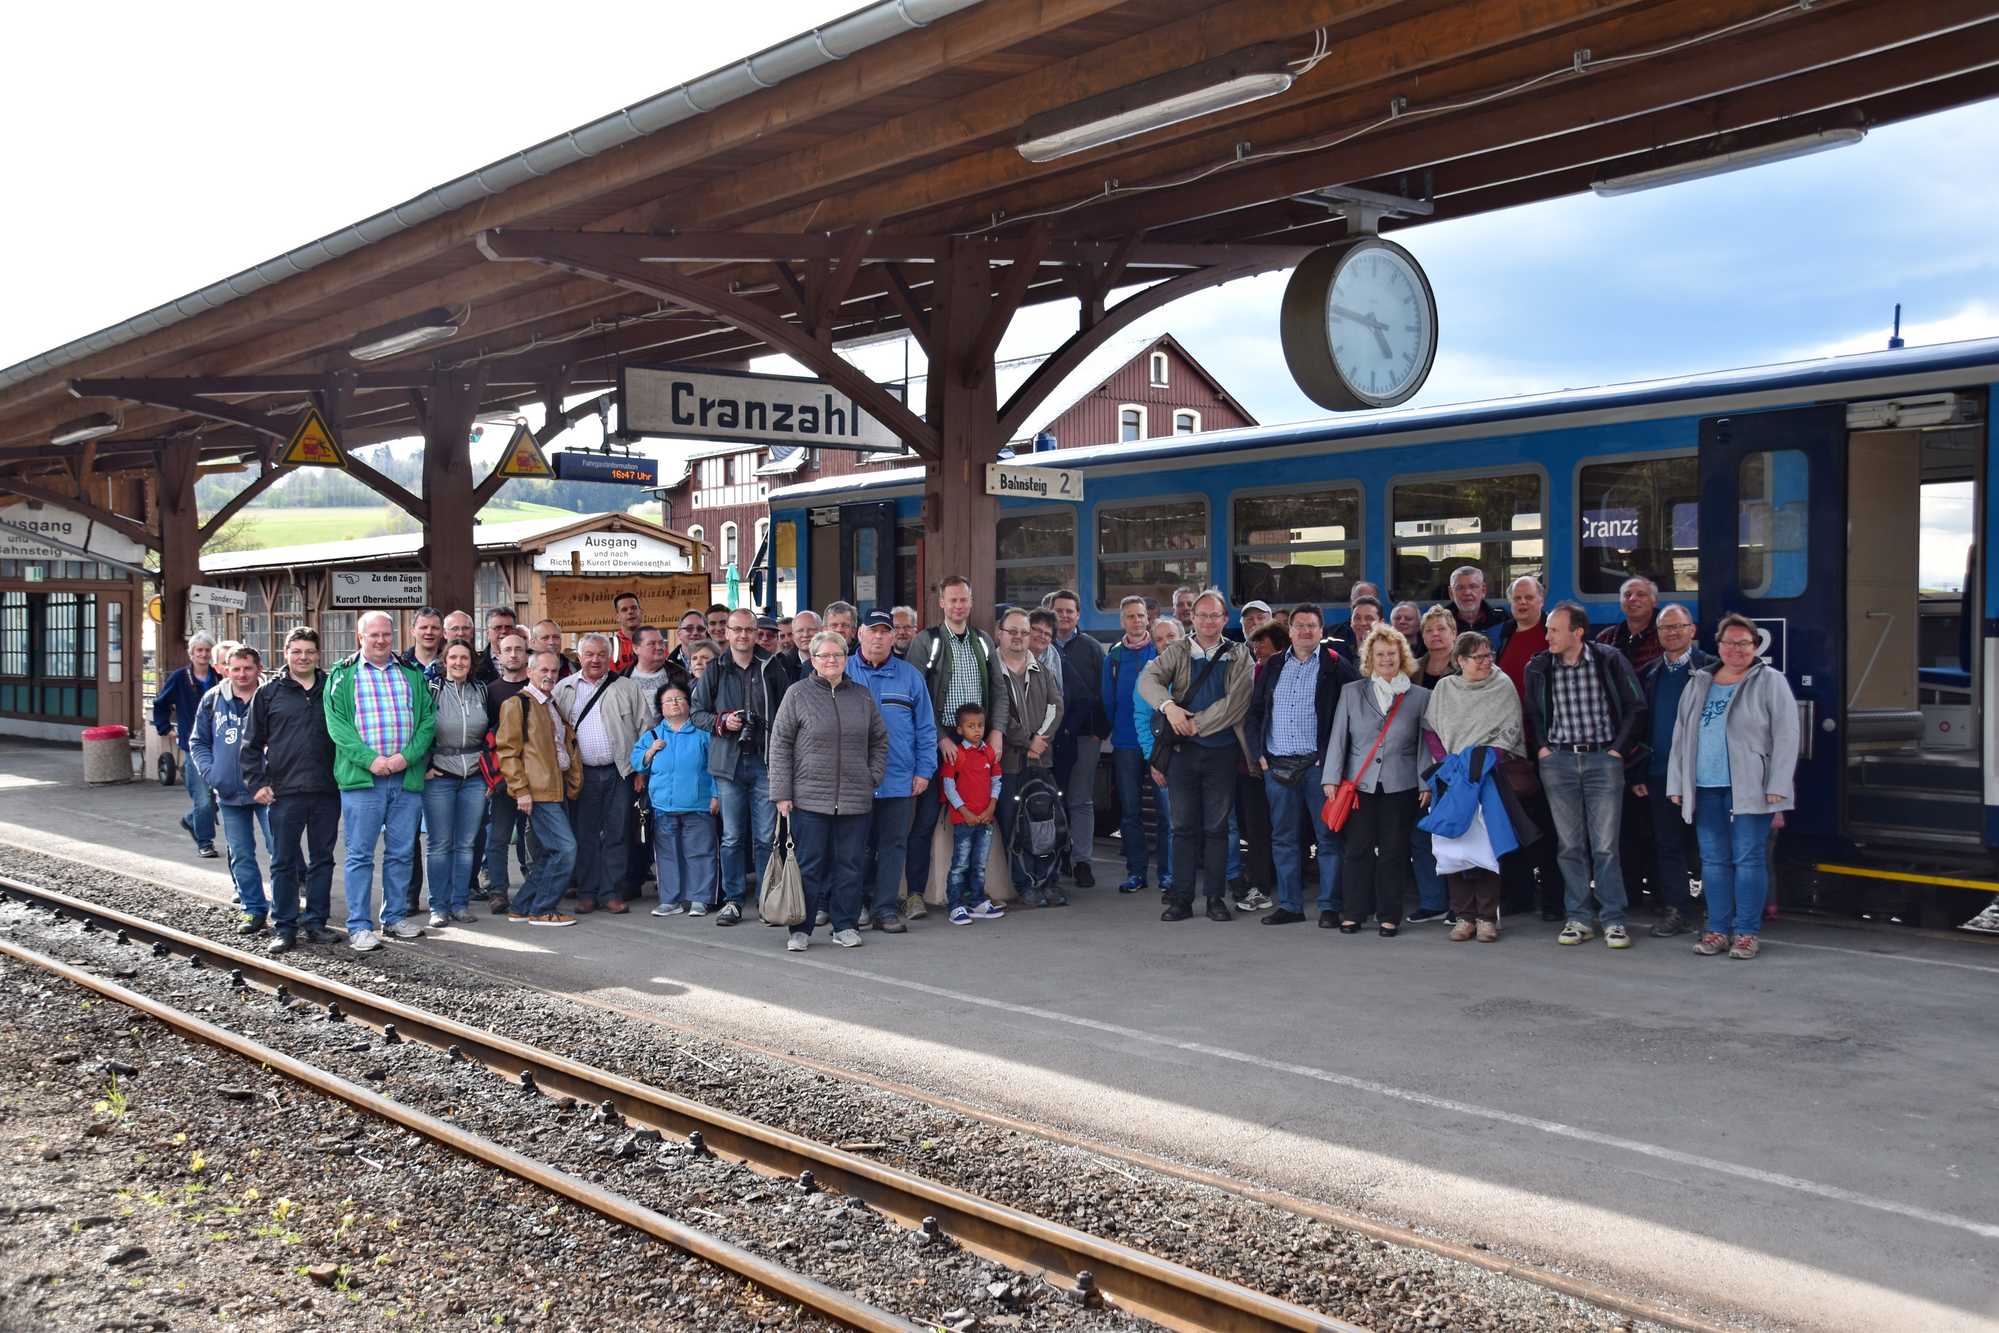 Gruppenfoto nach Ankunft im Bahnhof Cranzahl.